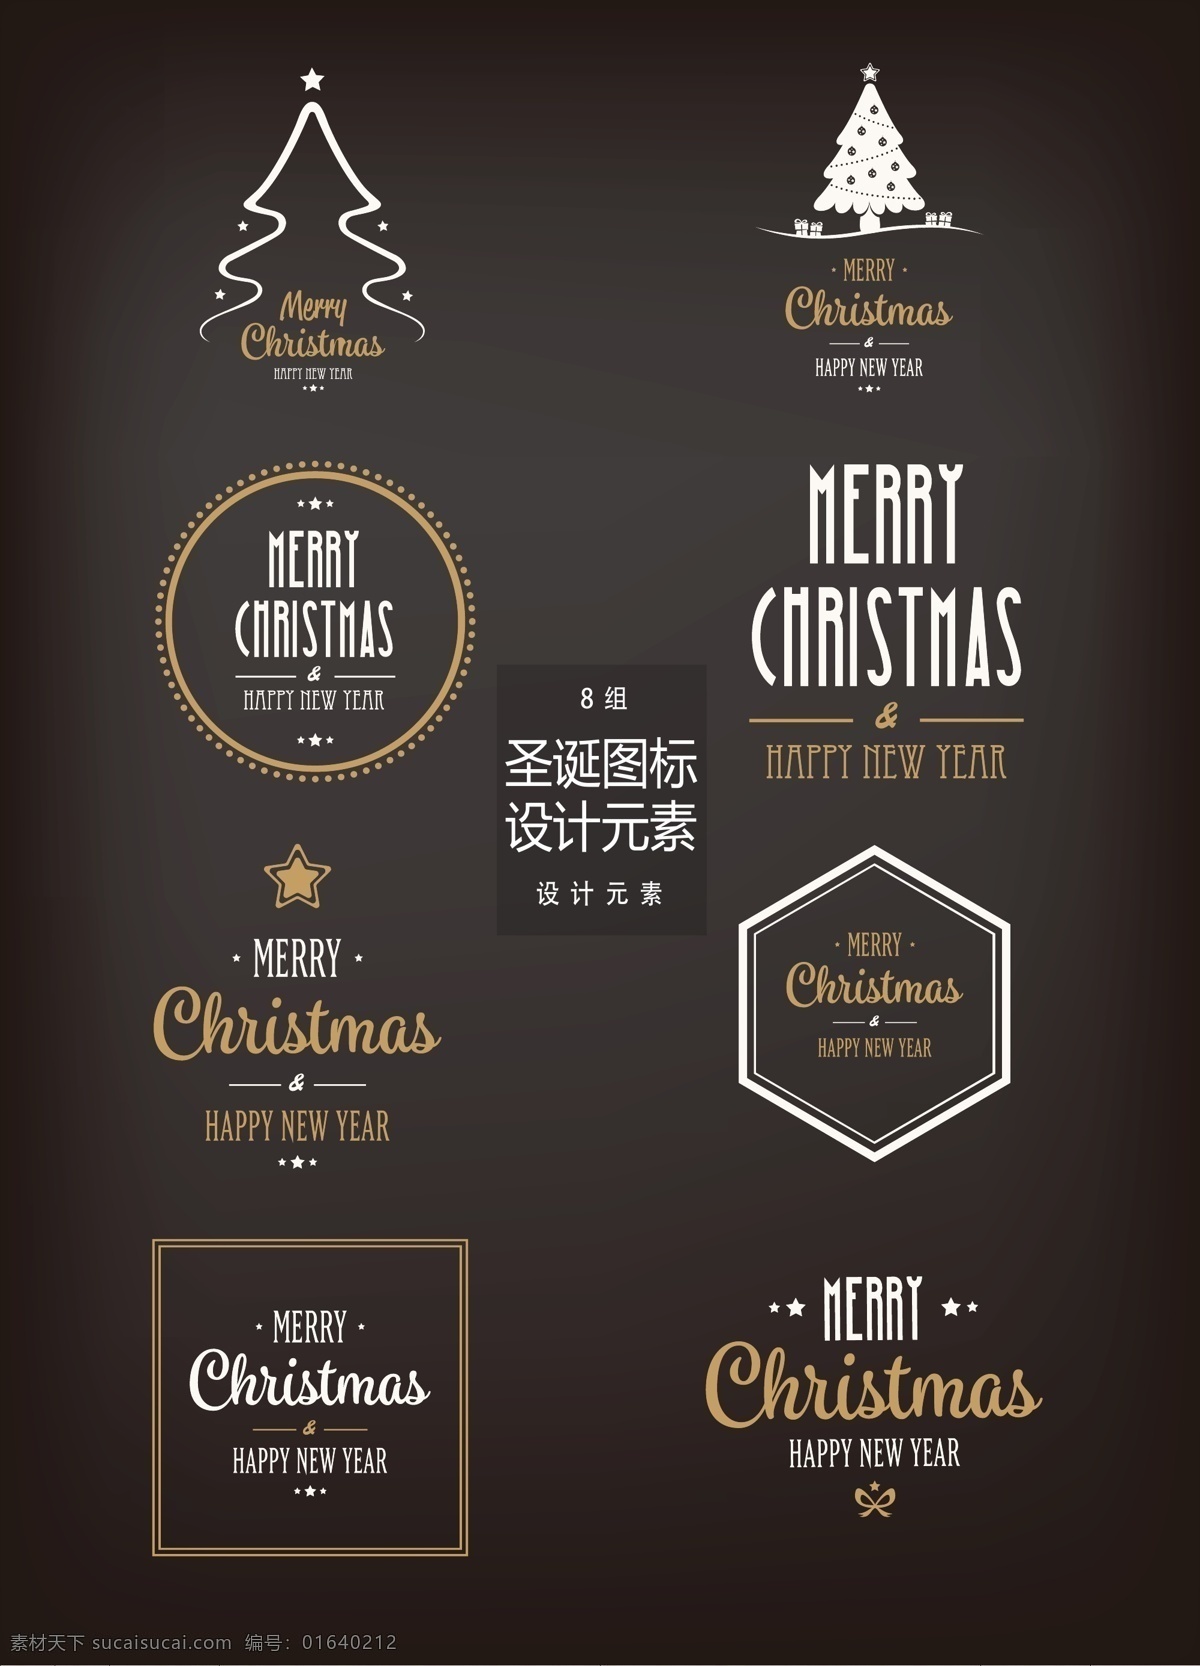 圣诞节 图标 元素 设计元素 圣诞树 边框 金色边框 圣诞节图标 圣诞 圣诞图标 金色花边